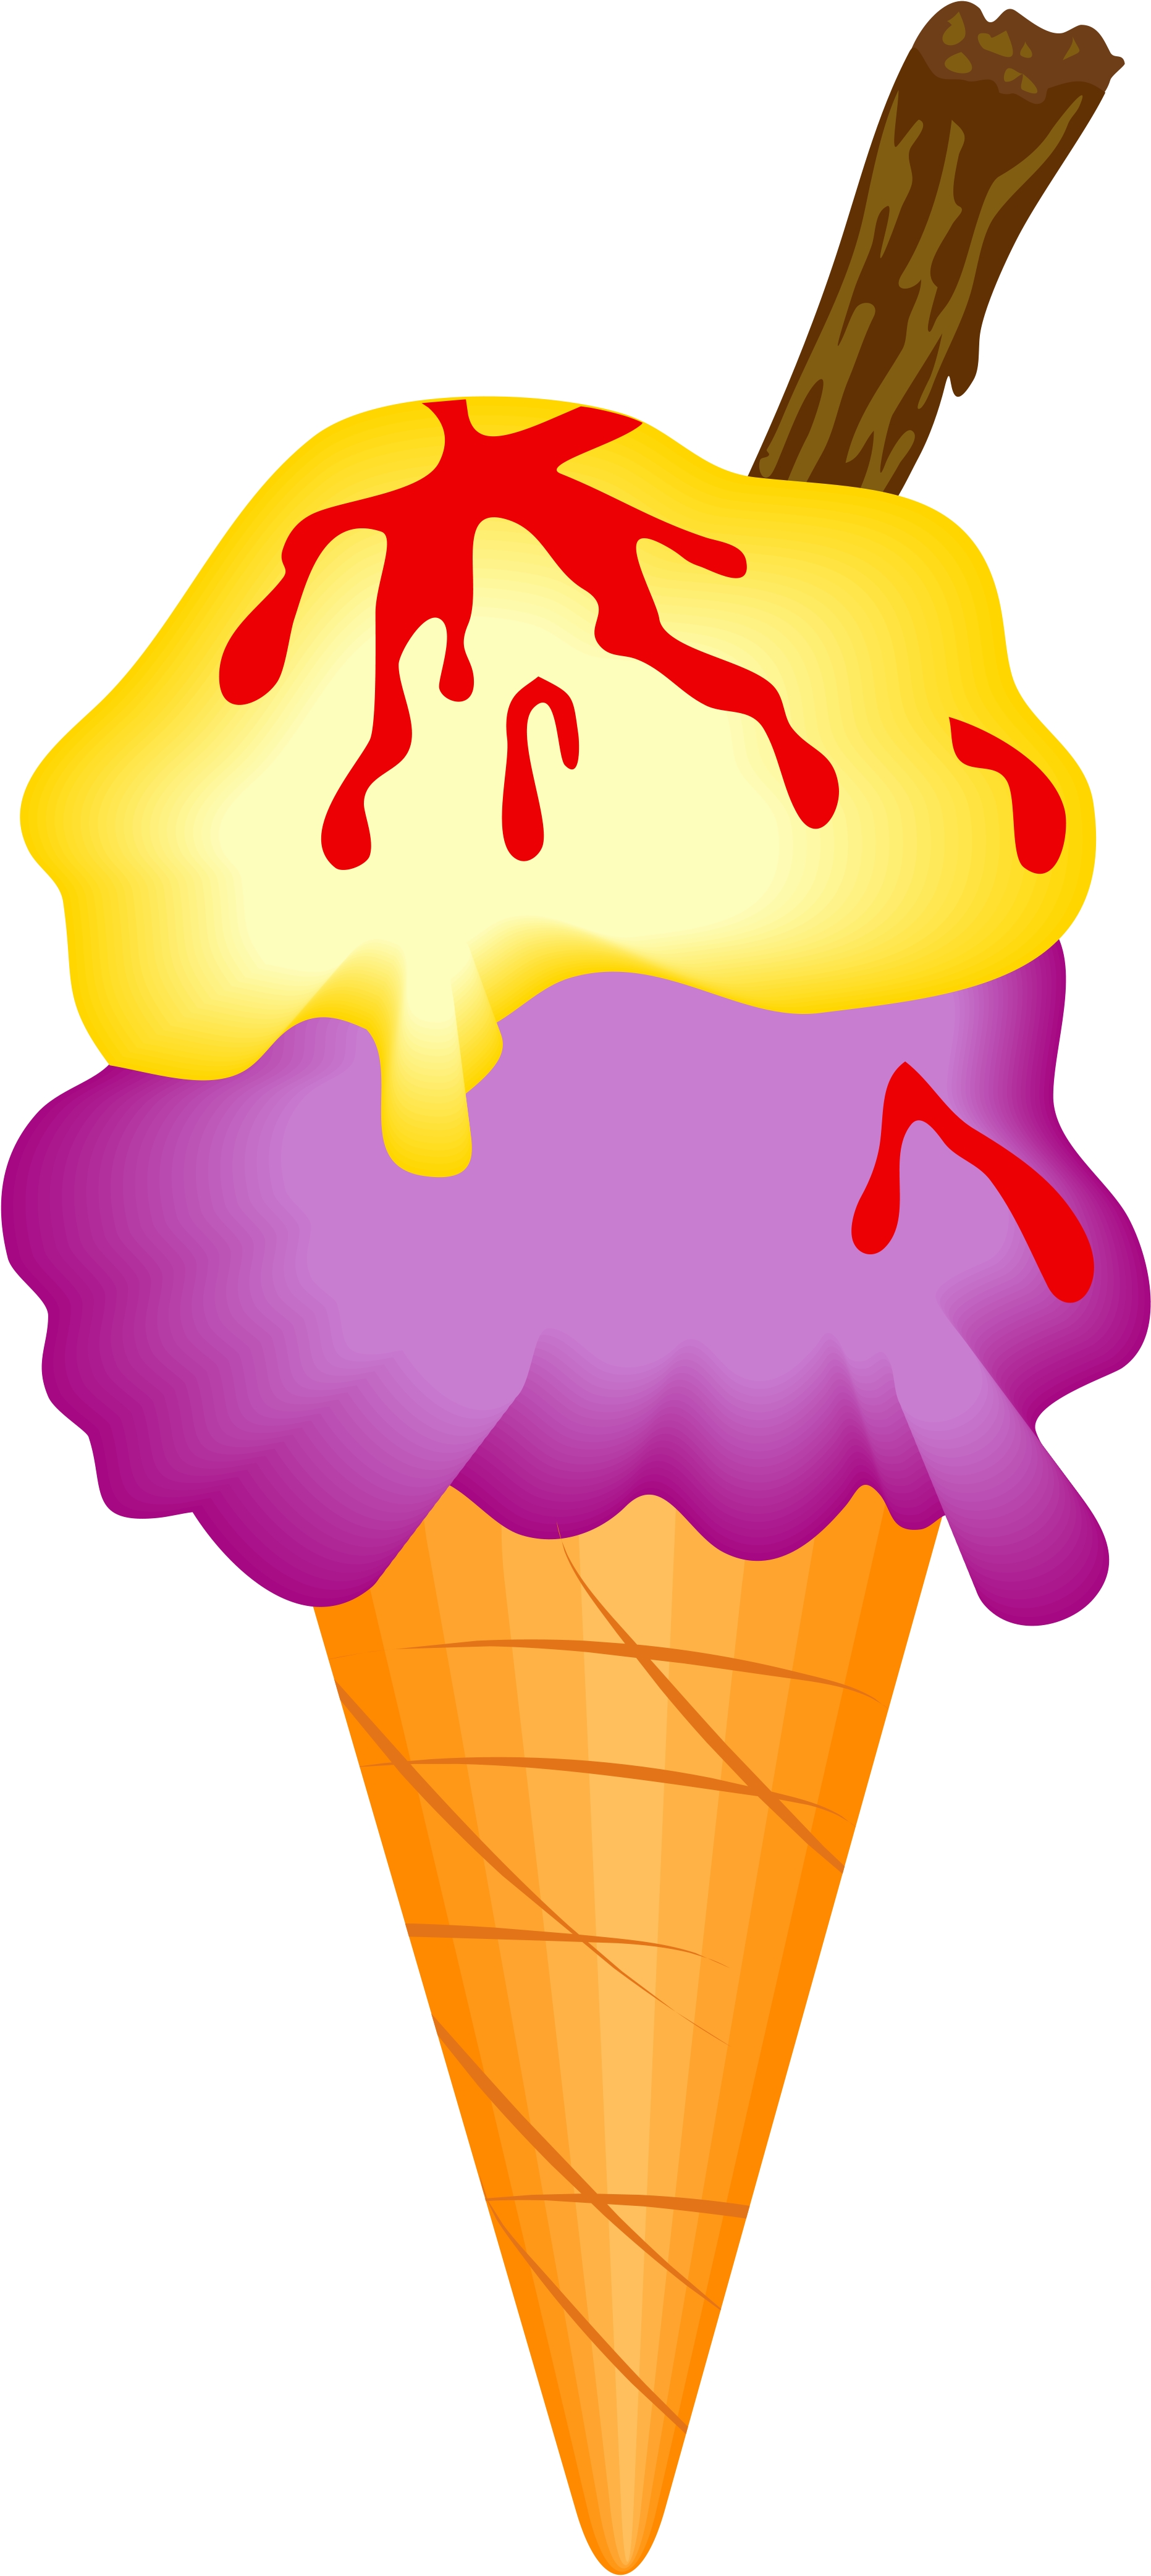 clip art ice cream cone free - photo #13